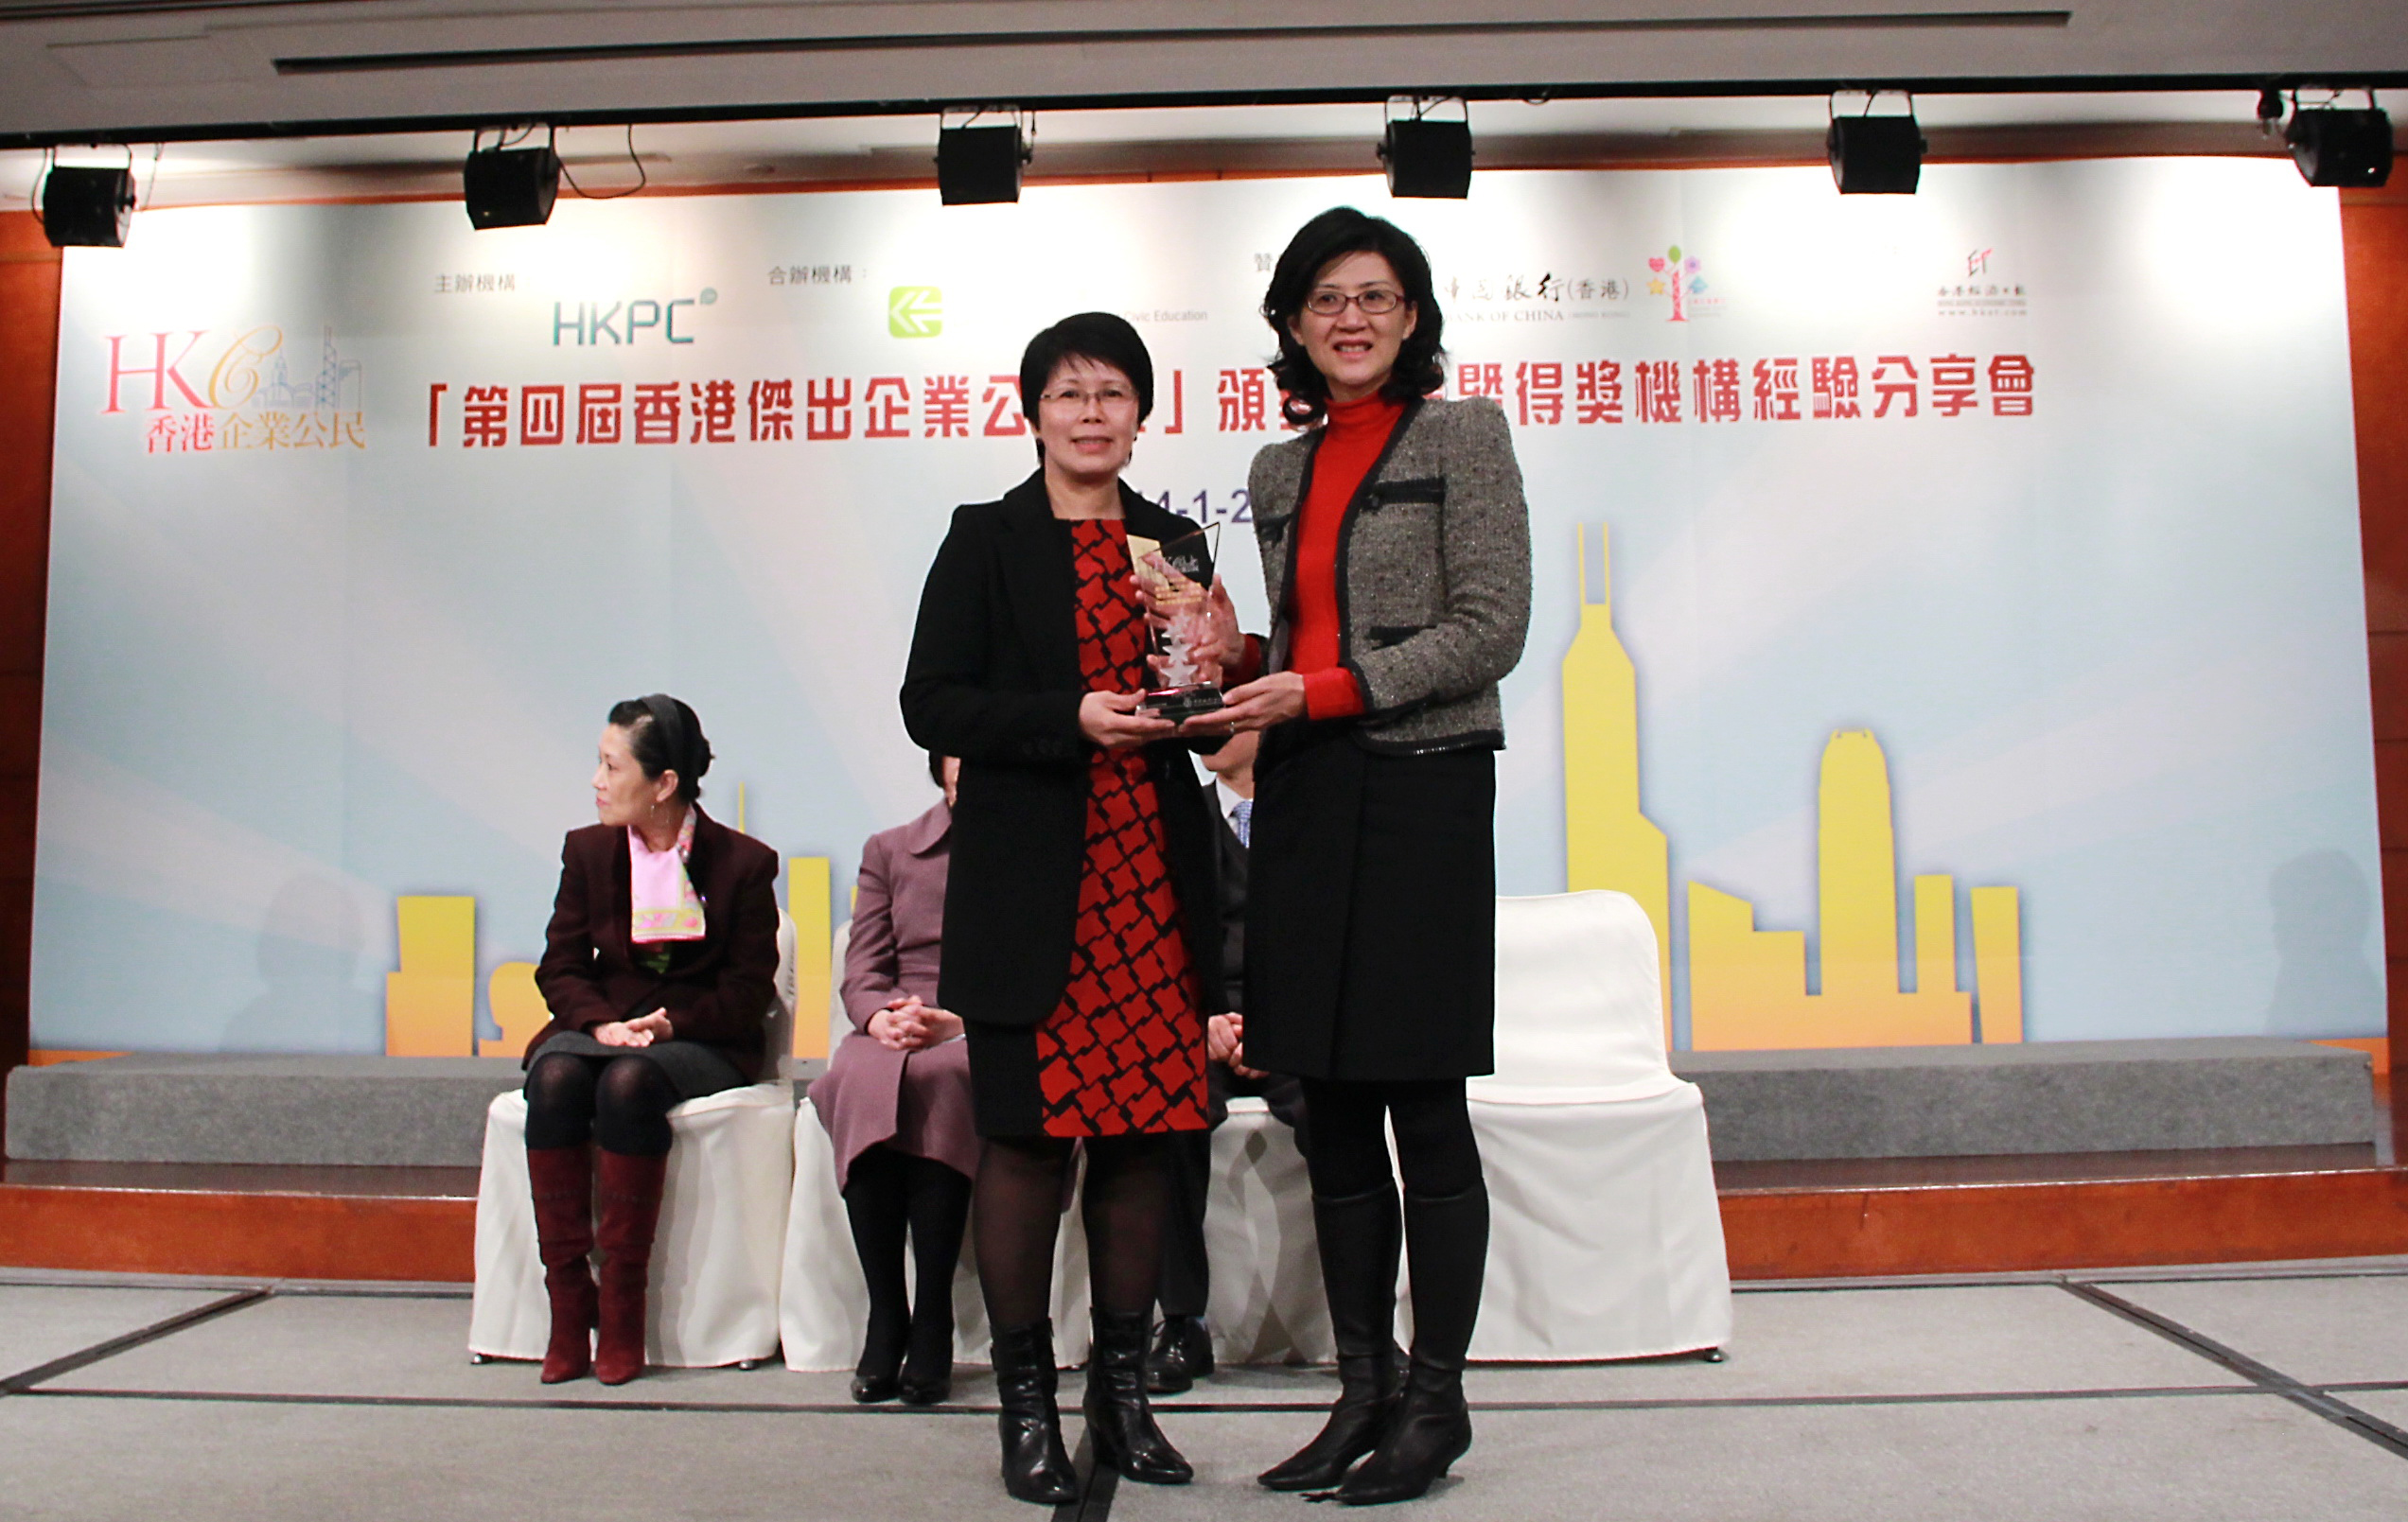 新創建集團義工隊連續三年榮獲「香港傑出企業公民獎」義工隊組別金獎